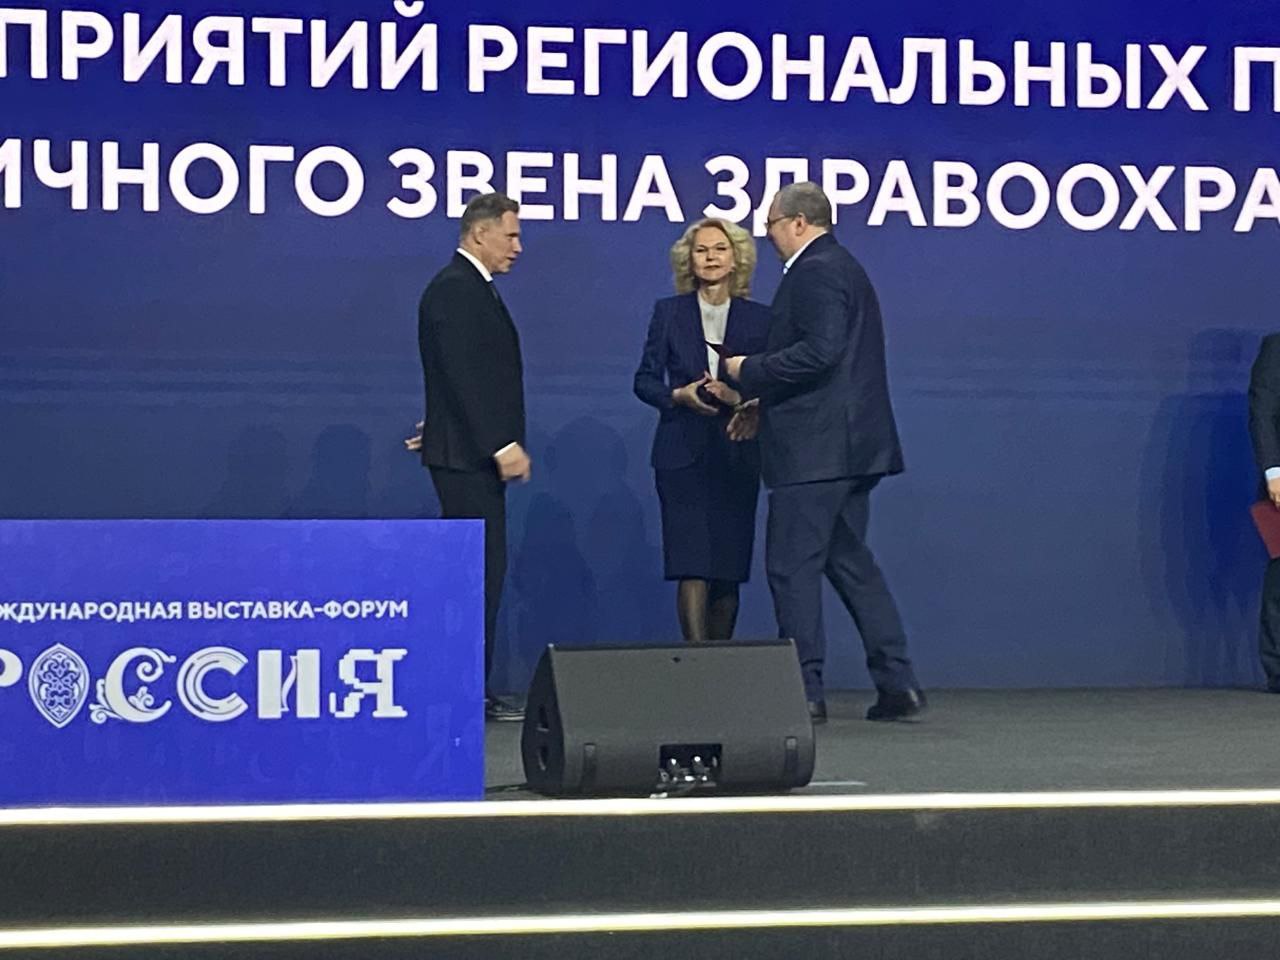 Краснодарский край наградили как лучший регион в стране за реализацию программы модернизации первичного звена здравоохранения